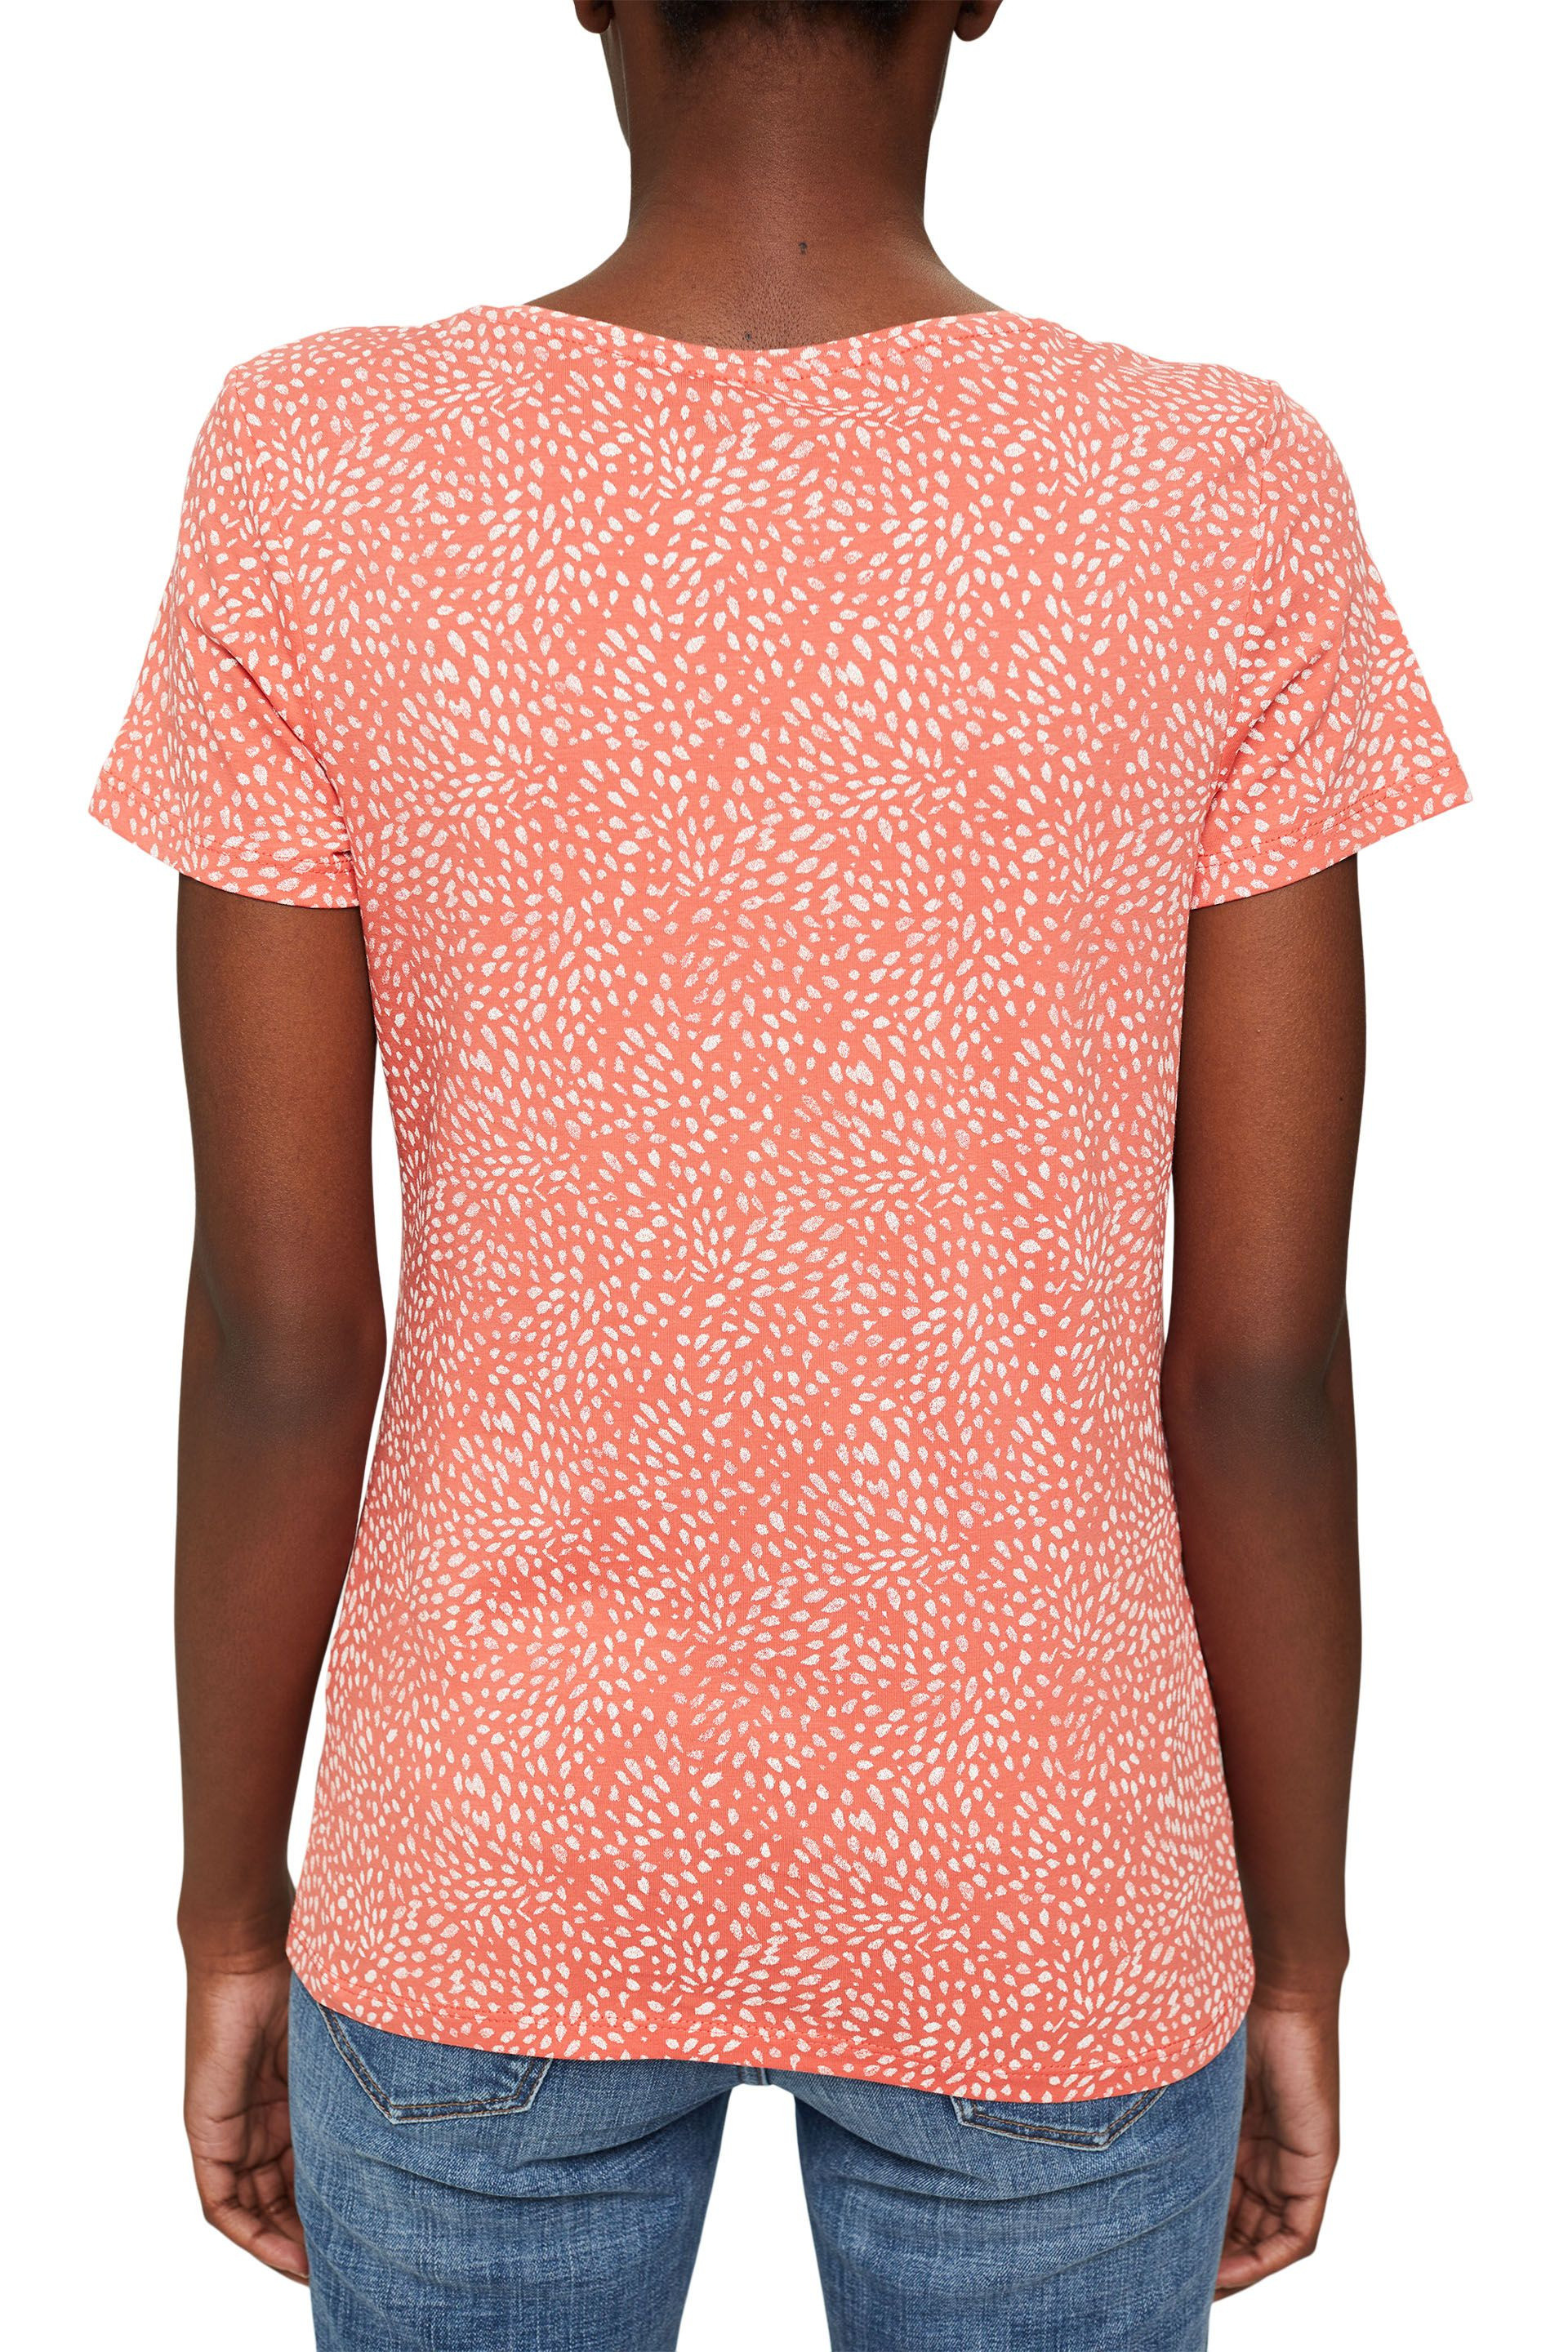 T-shirt in cotone biologico, Rosso corallo, large